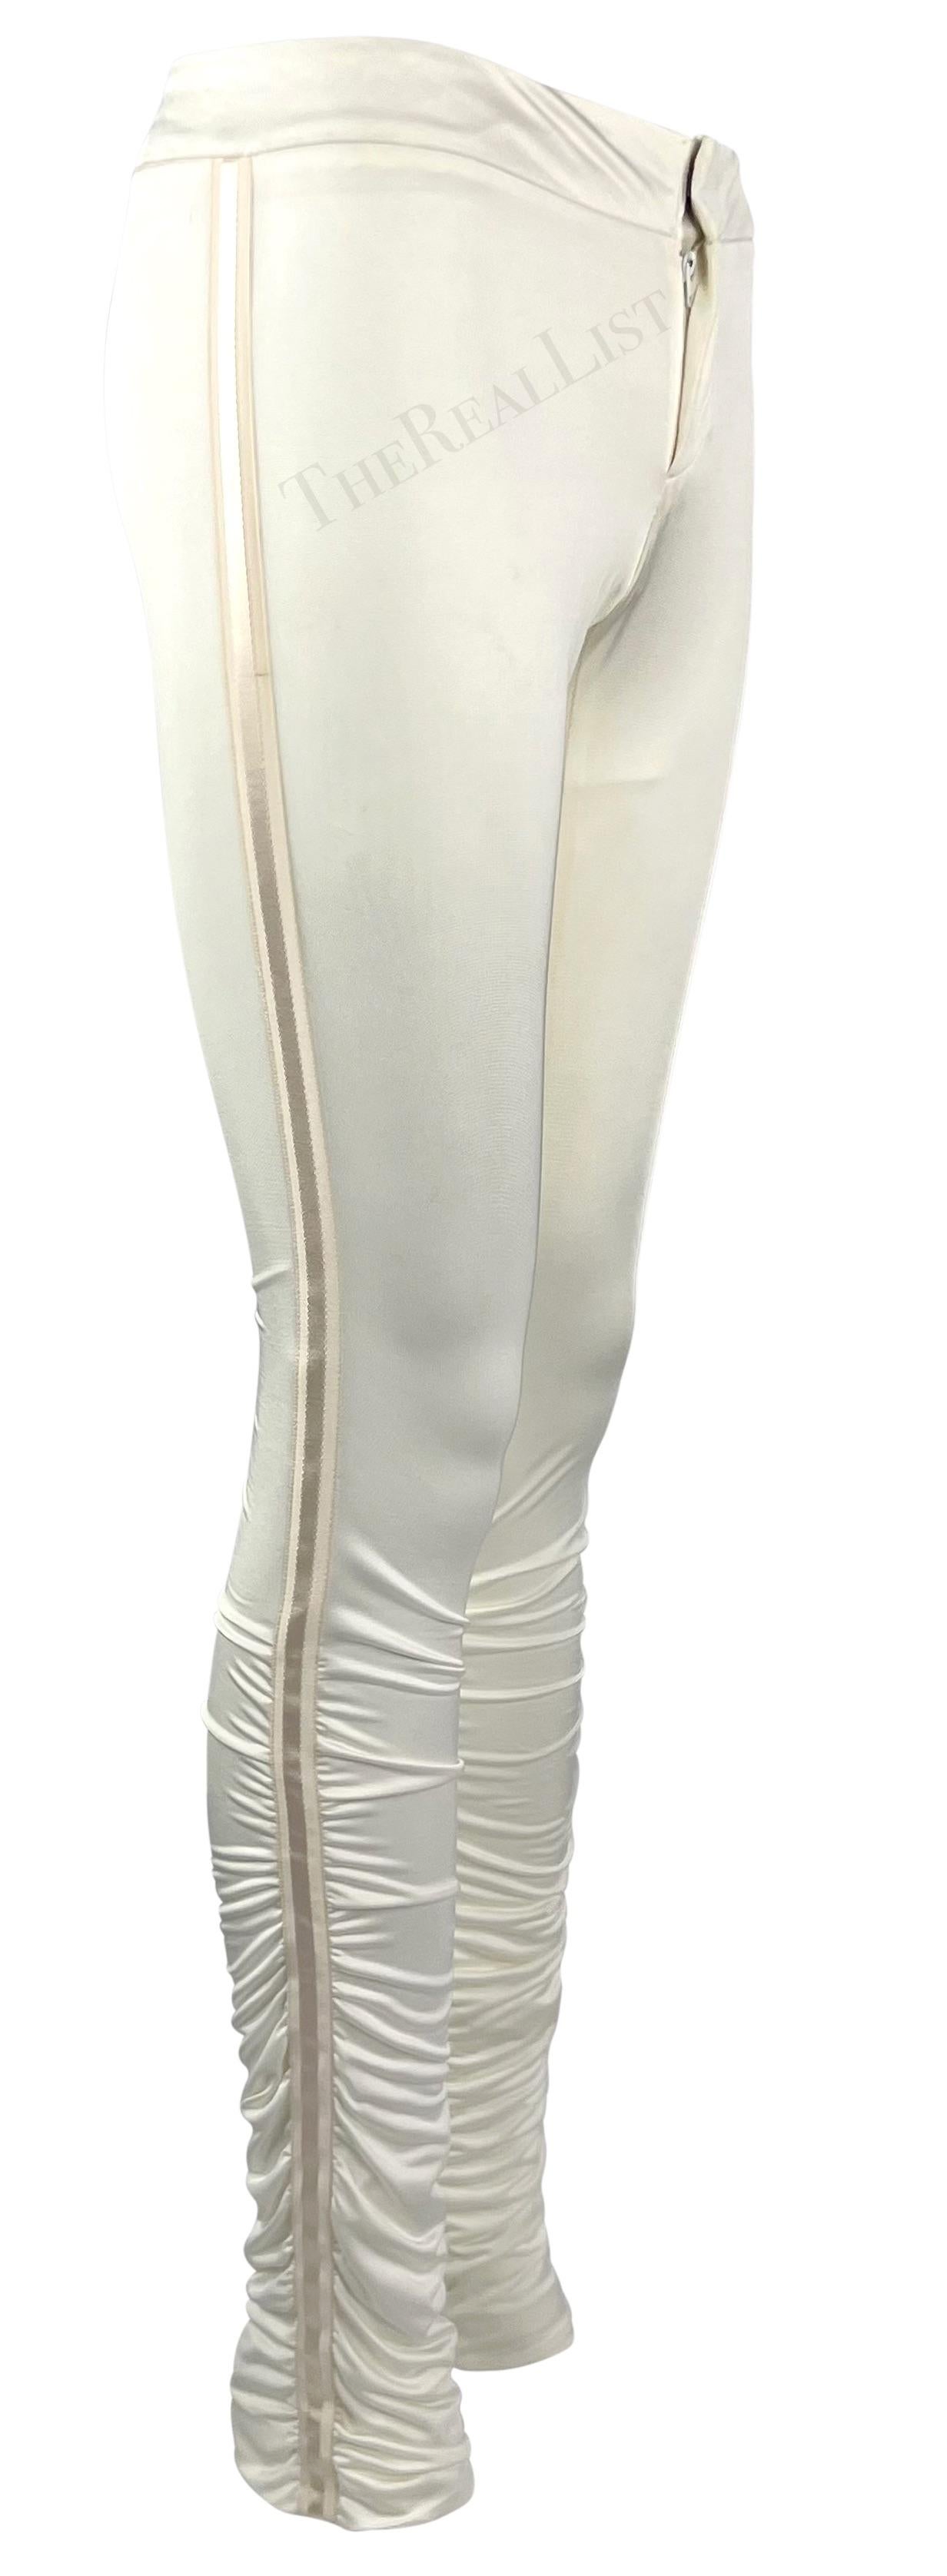 Ich präsentiere eine weiße Gucci-Hose, entworfen von Tom Ford. Diese figurbetonte Satinhose aus der Herbst/Winter-Kollektion 2004 ist an den Waden gerafft und wird durch ein einfarbig gestreiftes Band an beiden Seiten vervollständigt. Diese